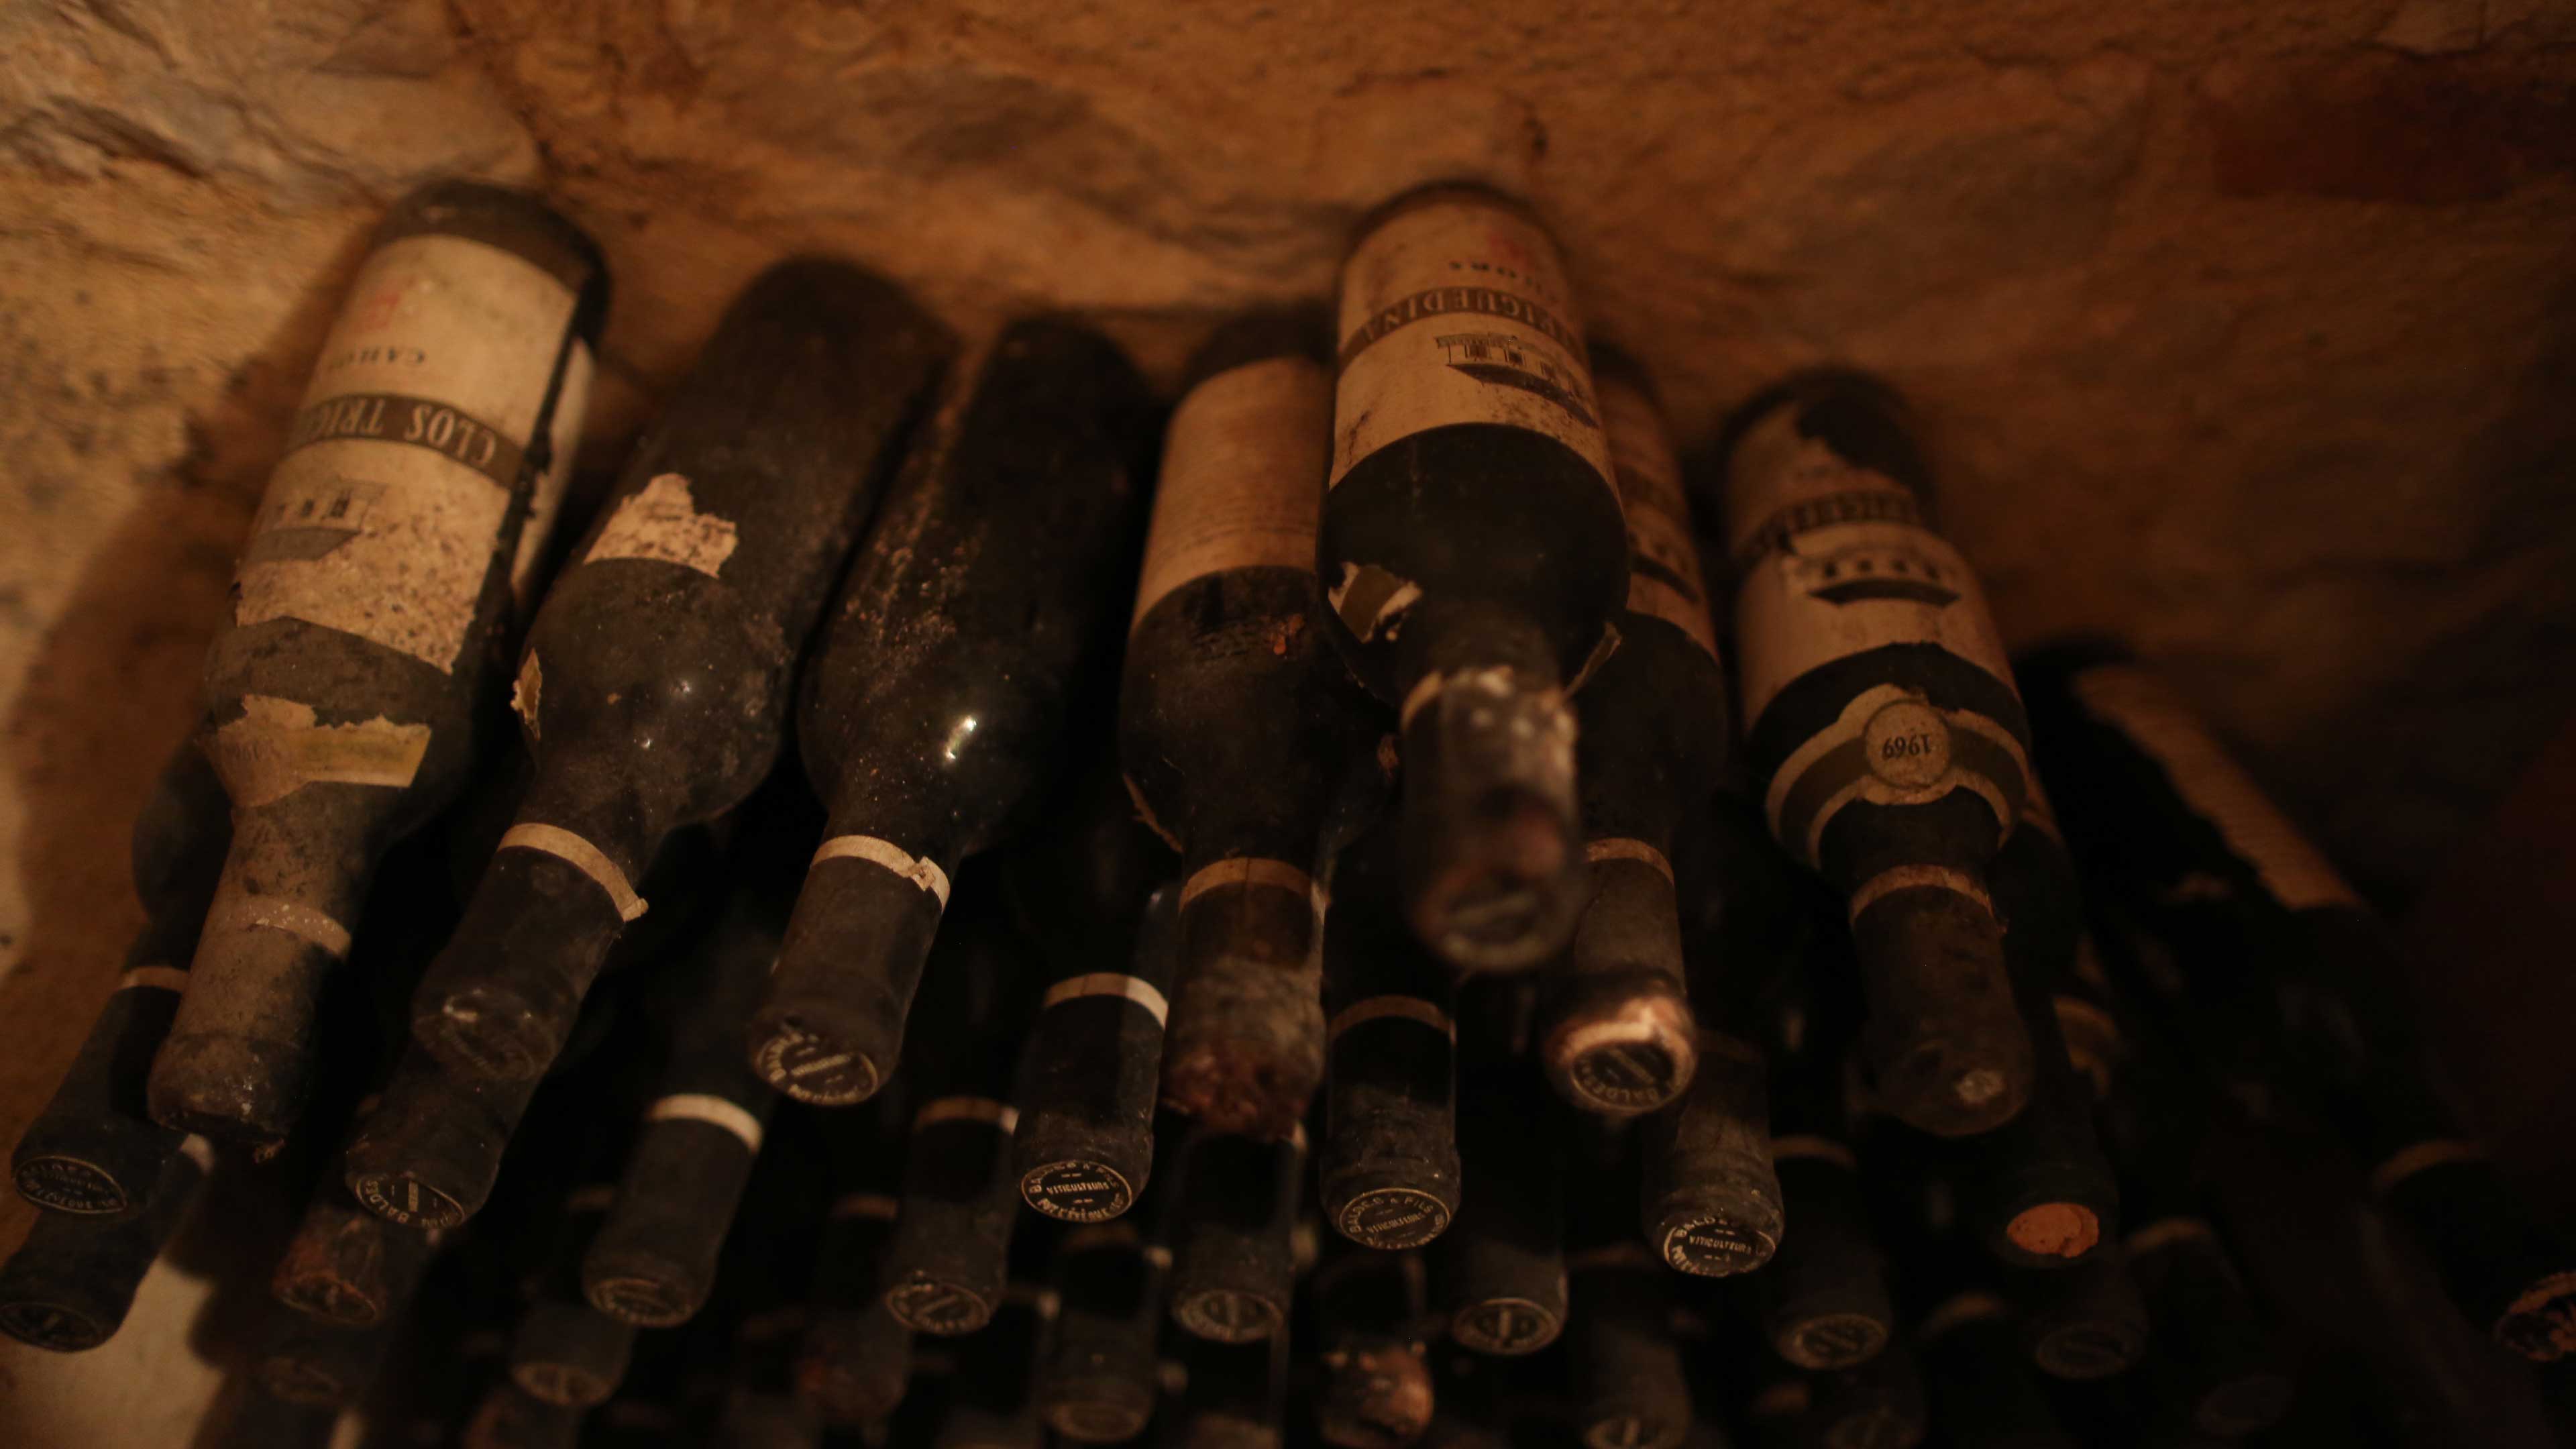 有典故的老年份葡萄酒往往更具價值。